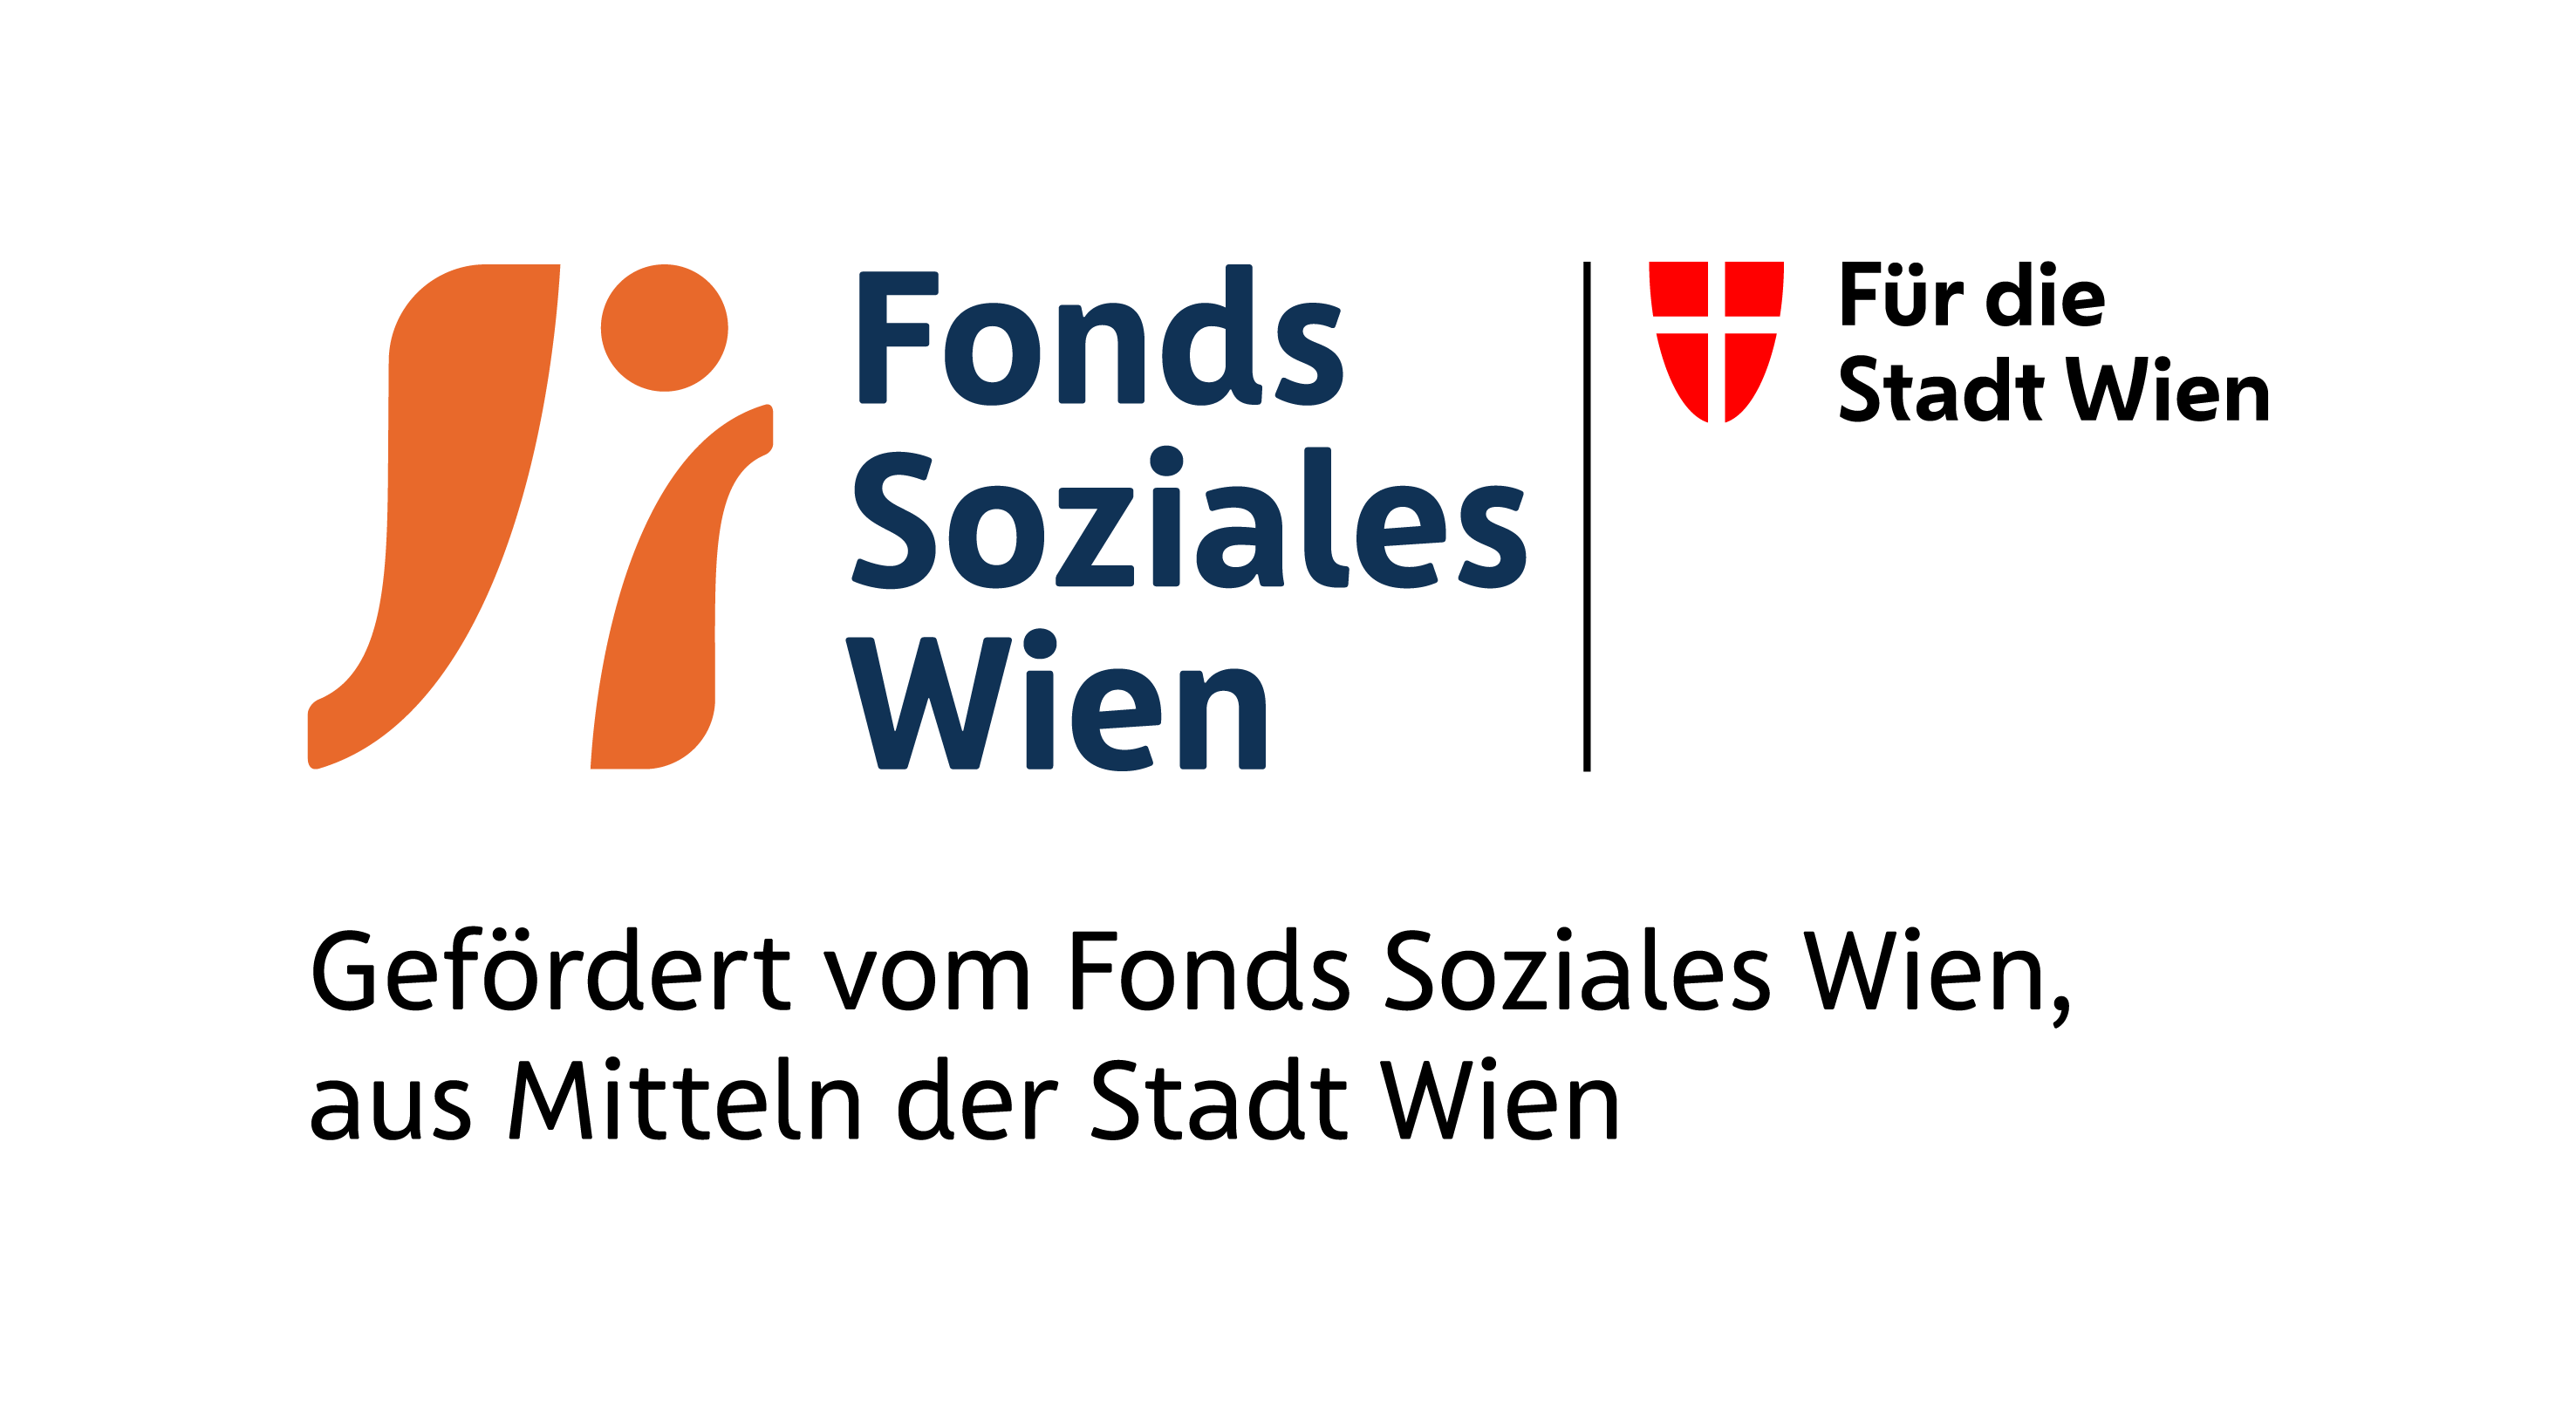 Gefördert vom Fonds Soziales Wien, aus Mitteln der Stadt Wien